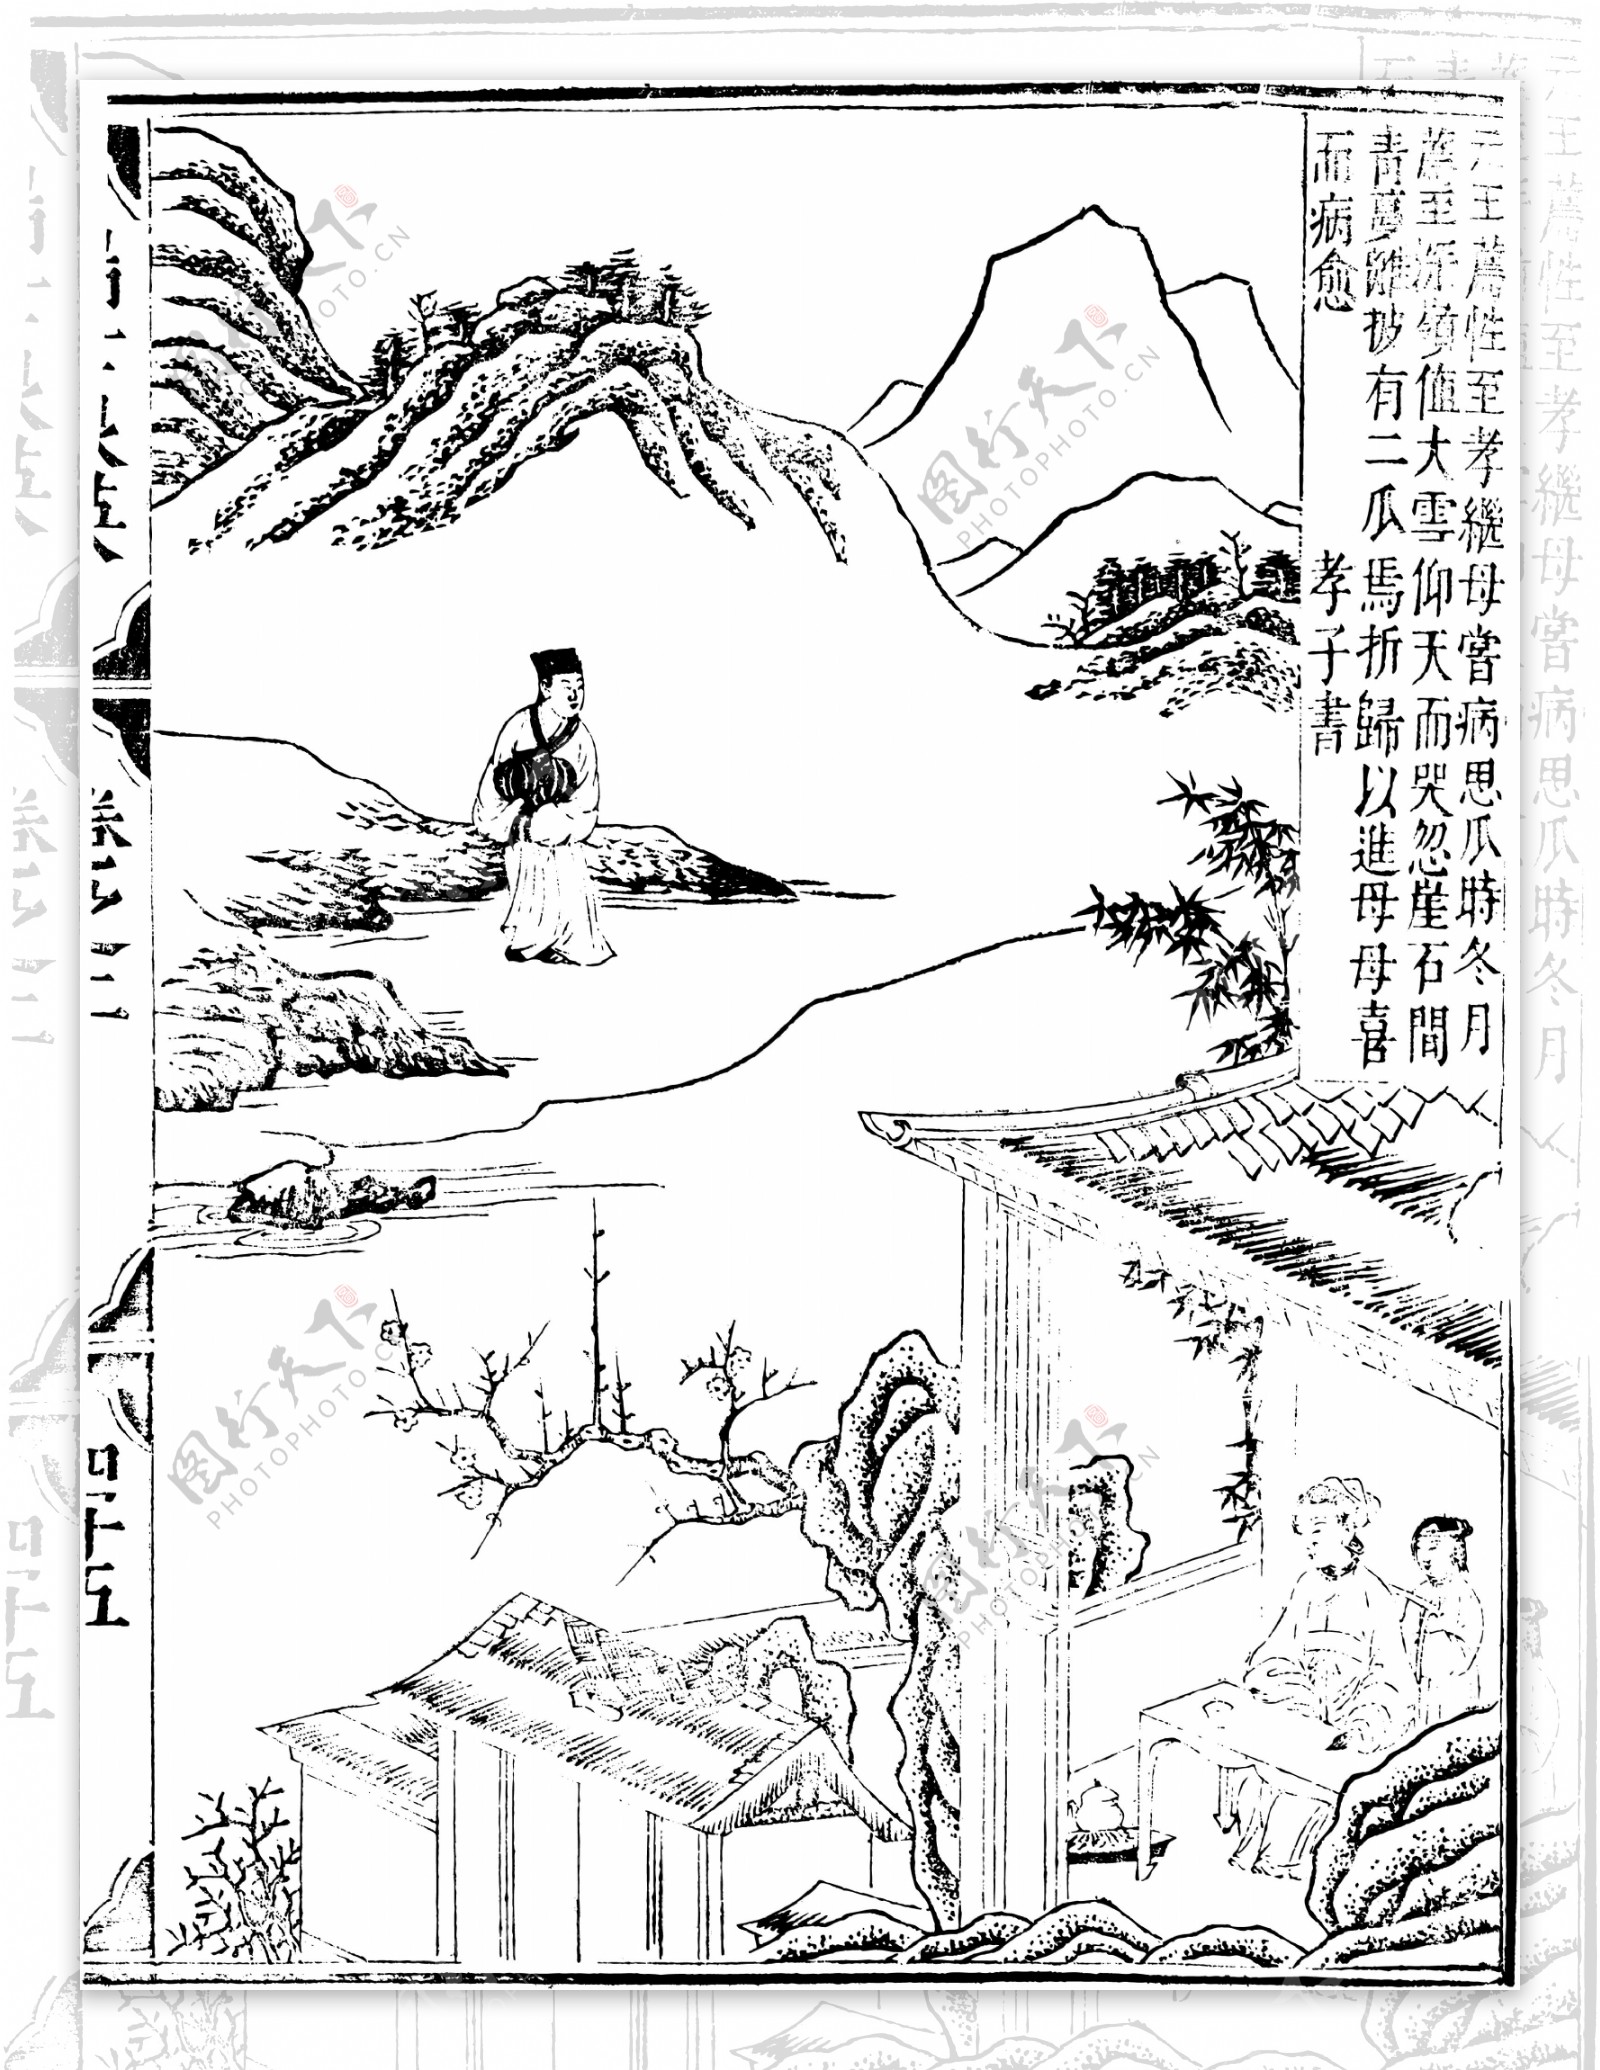 瑞世良英木刻版画中国传统文化19